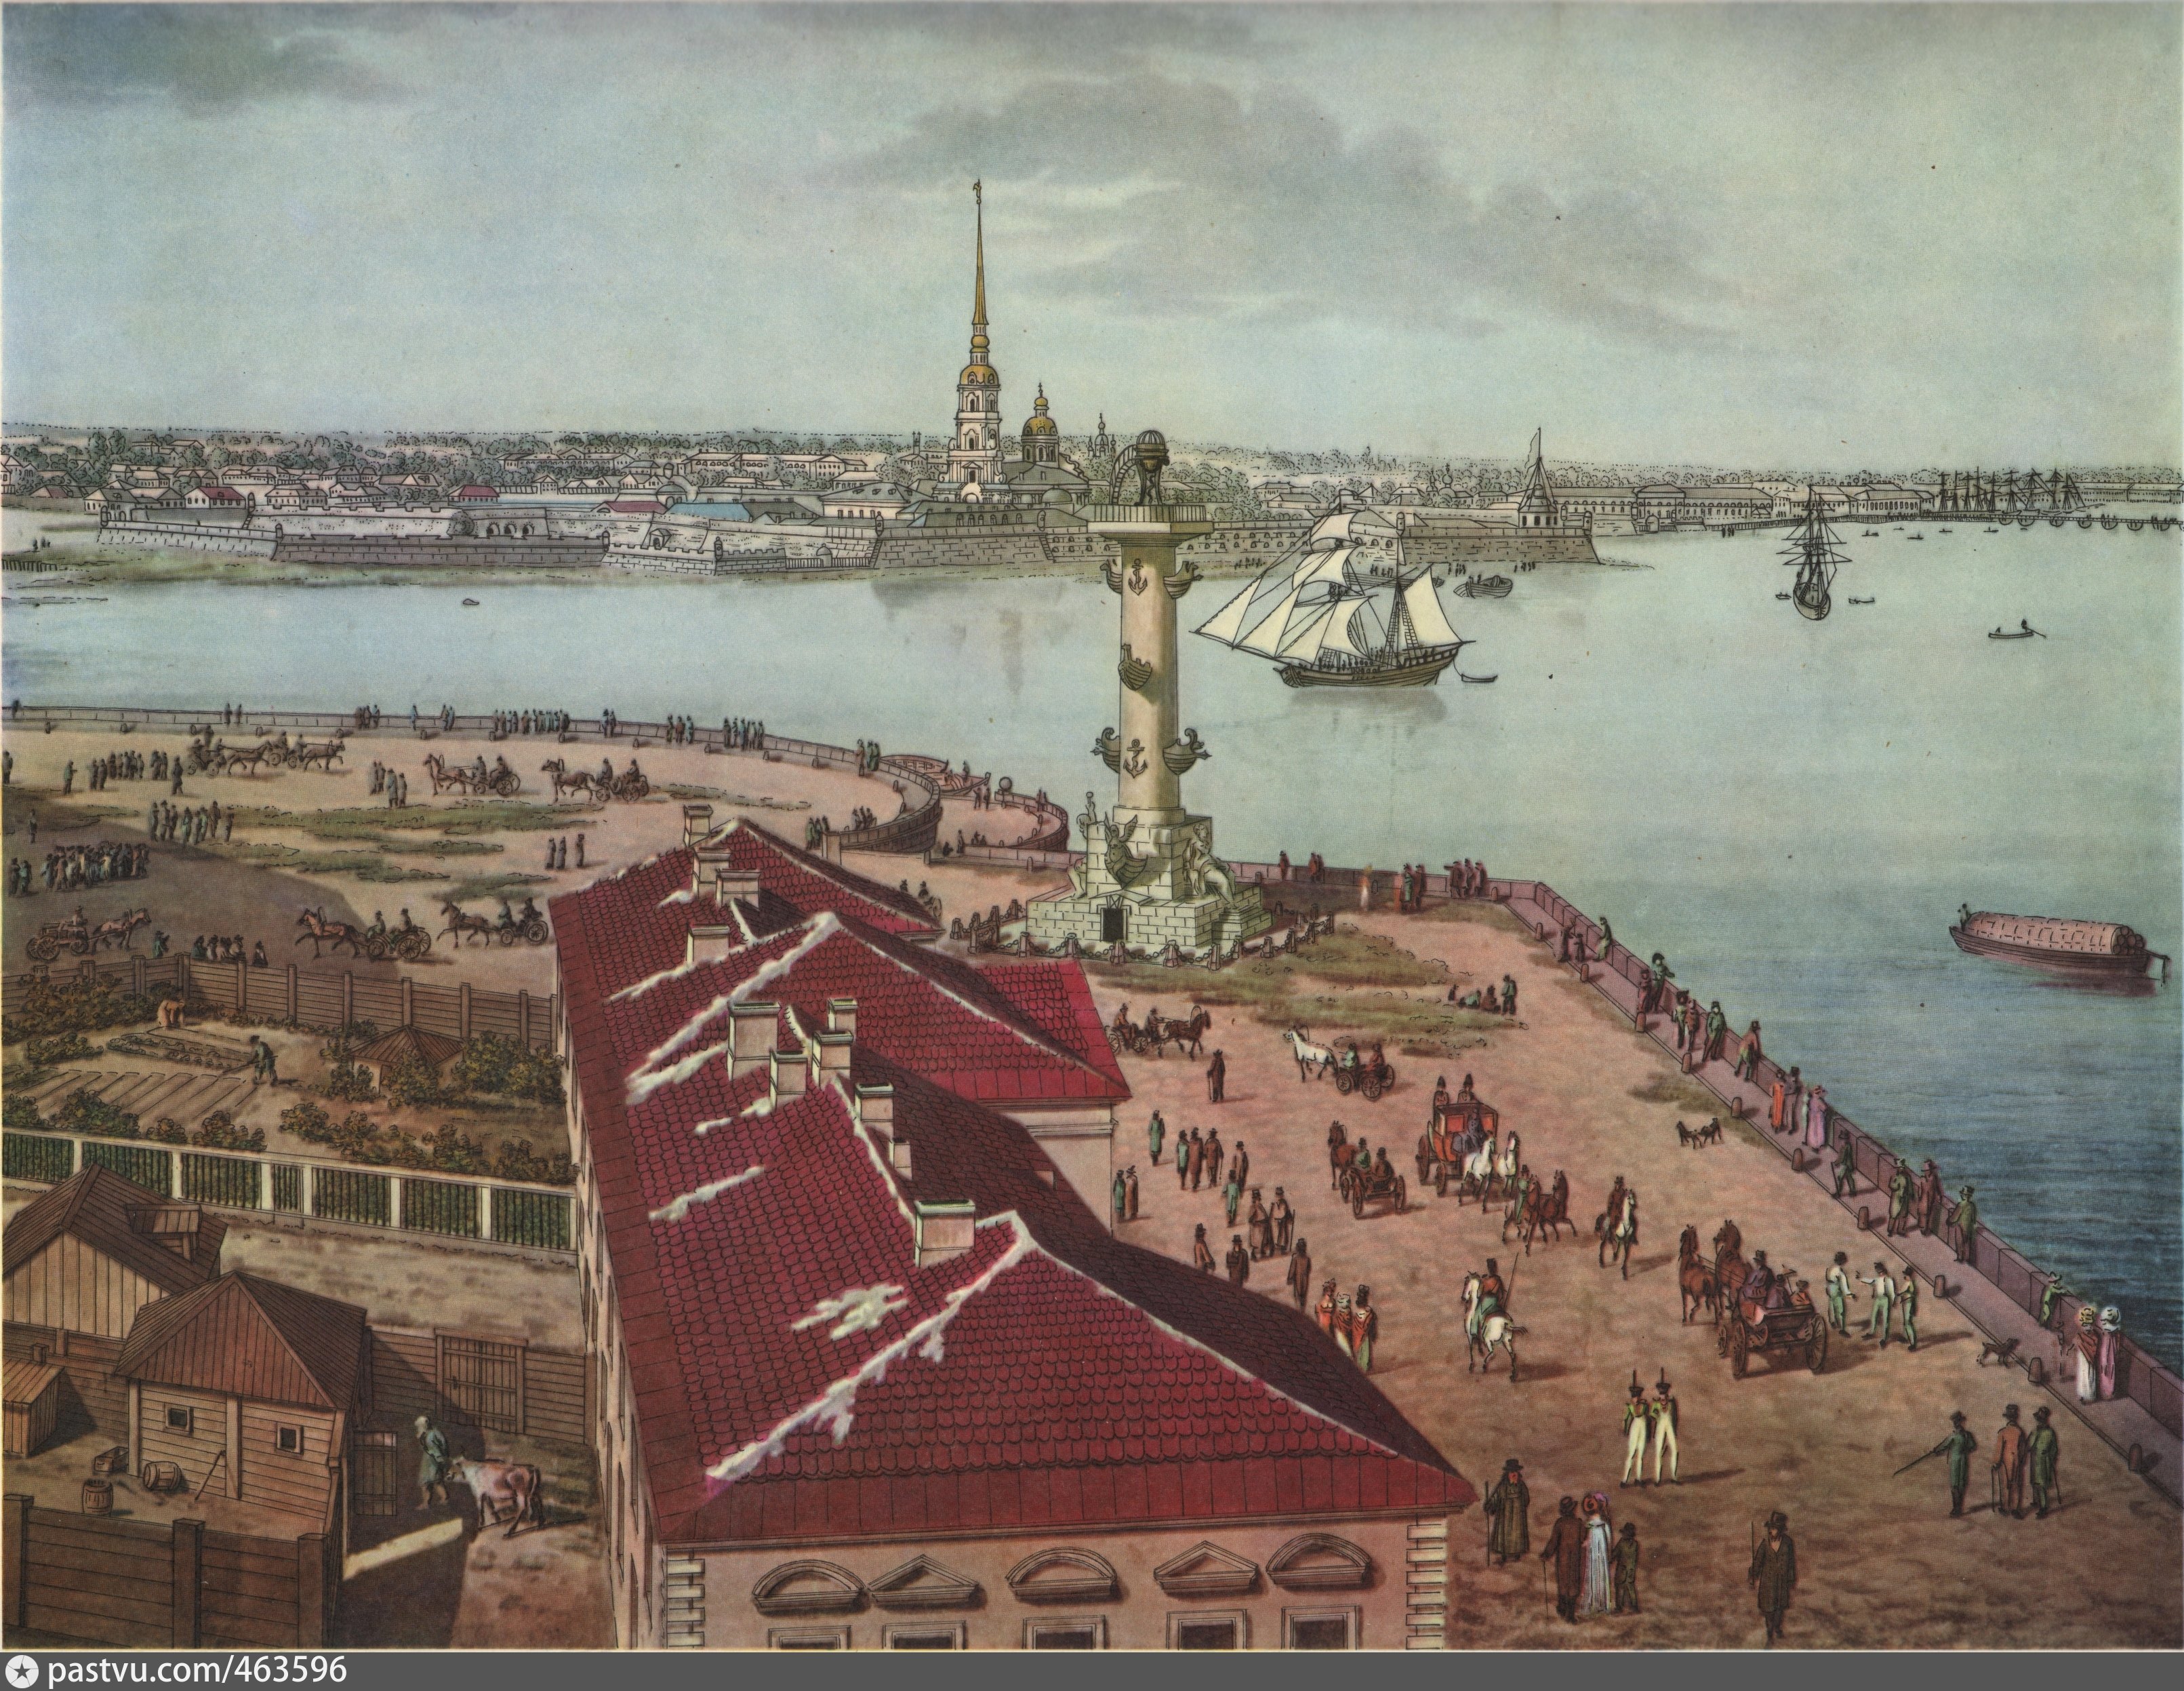 Старый васильевский остров. Анжело Тозелли панорама Петербурга 1820 года. Санкт Петербург при ептр1.